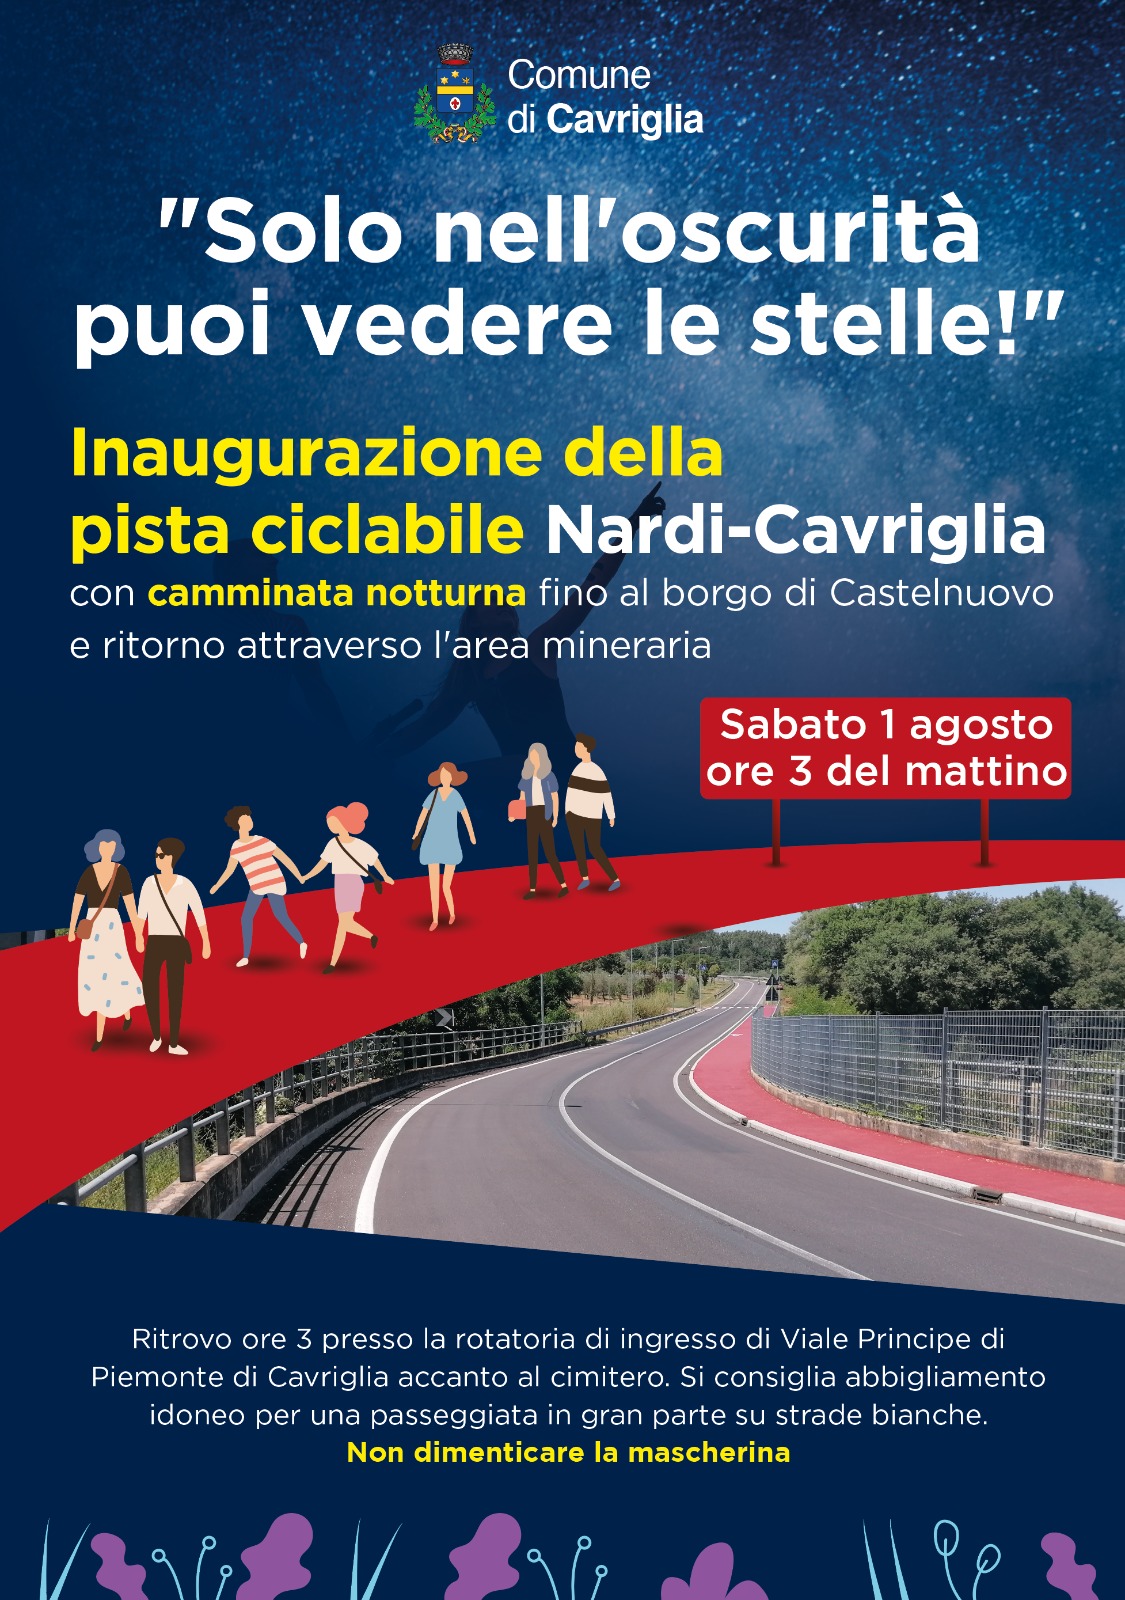 Inaugurazione del primo tratto della ciclabile Cavriglia-Nardi con camminata notturna